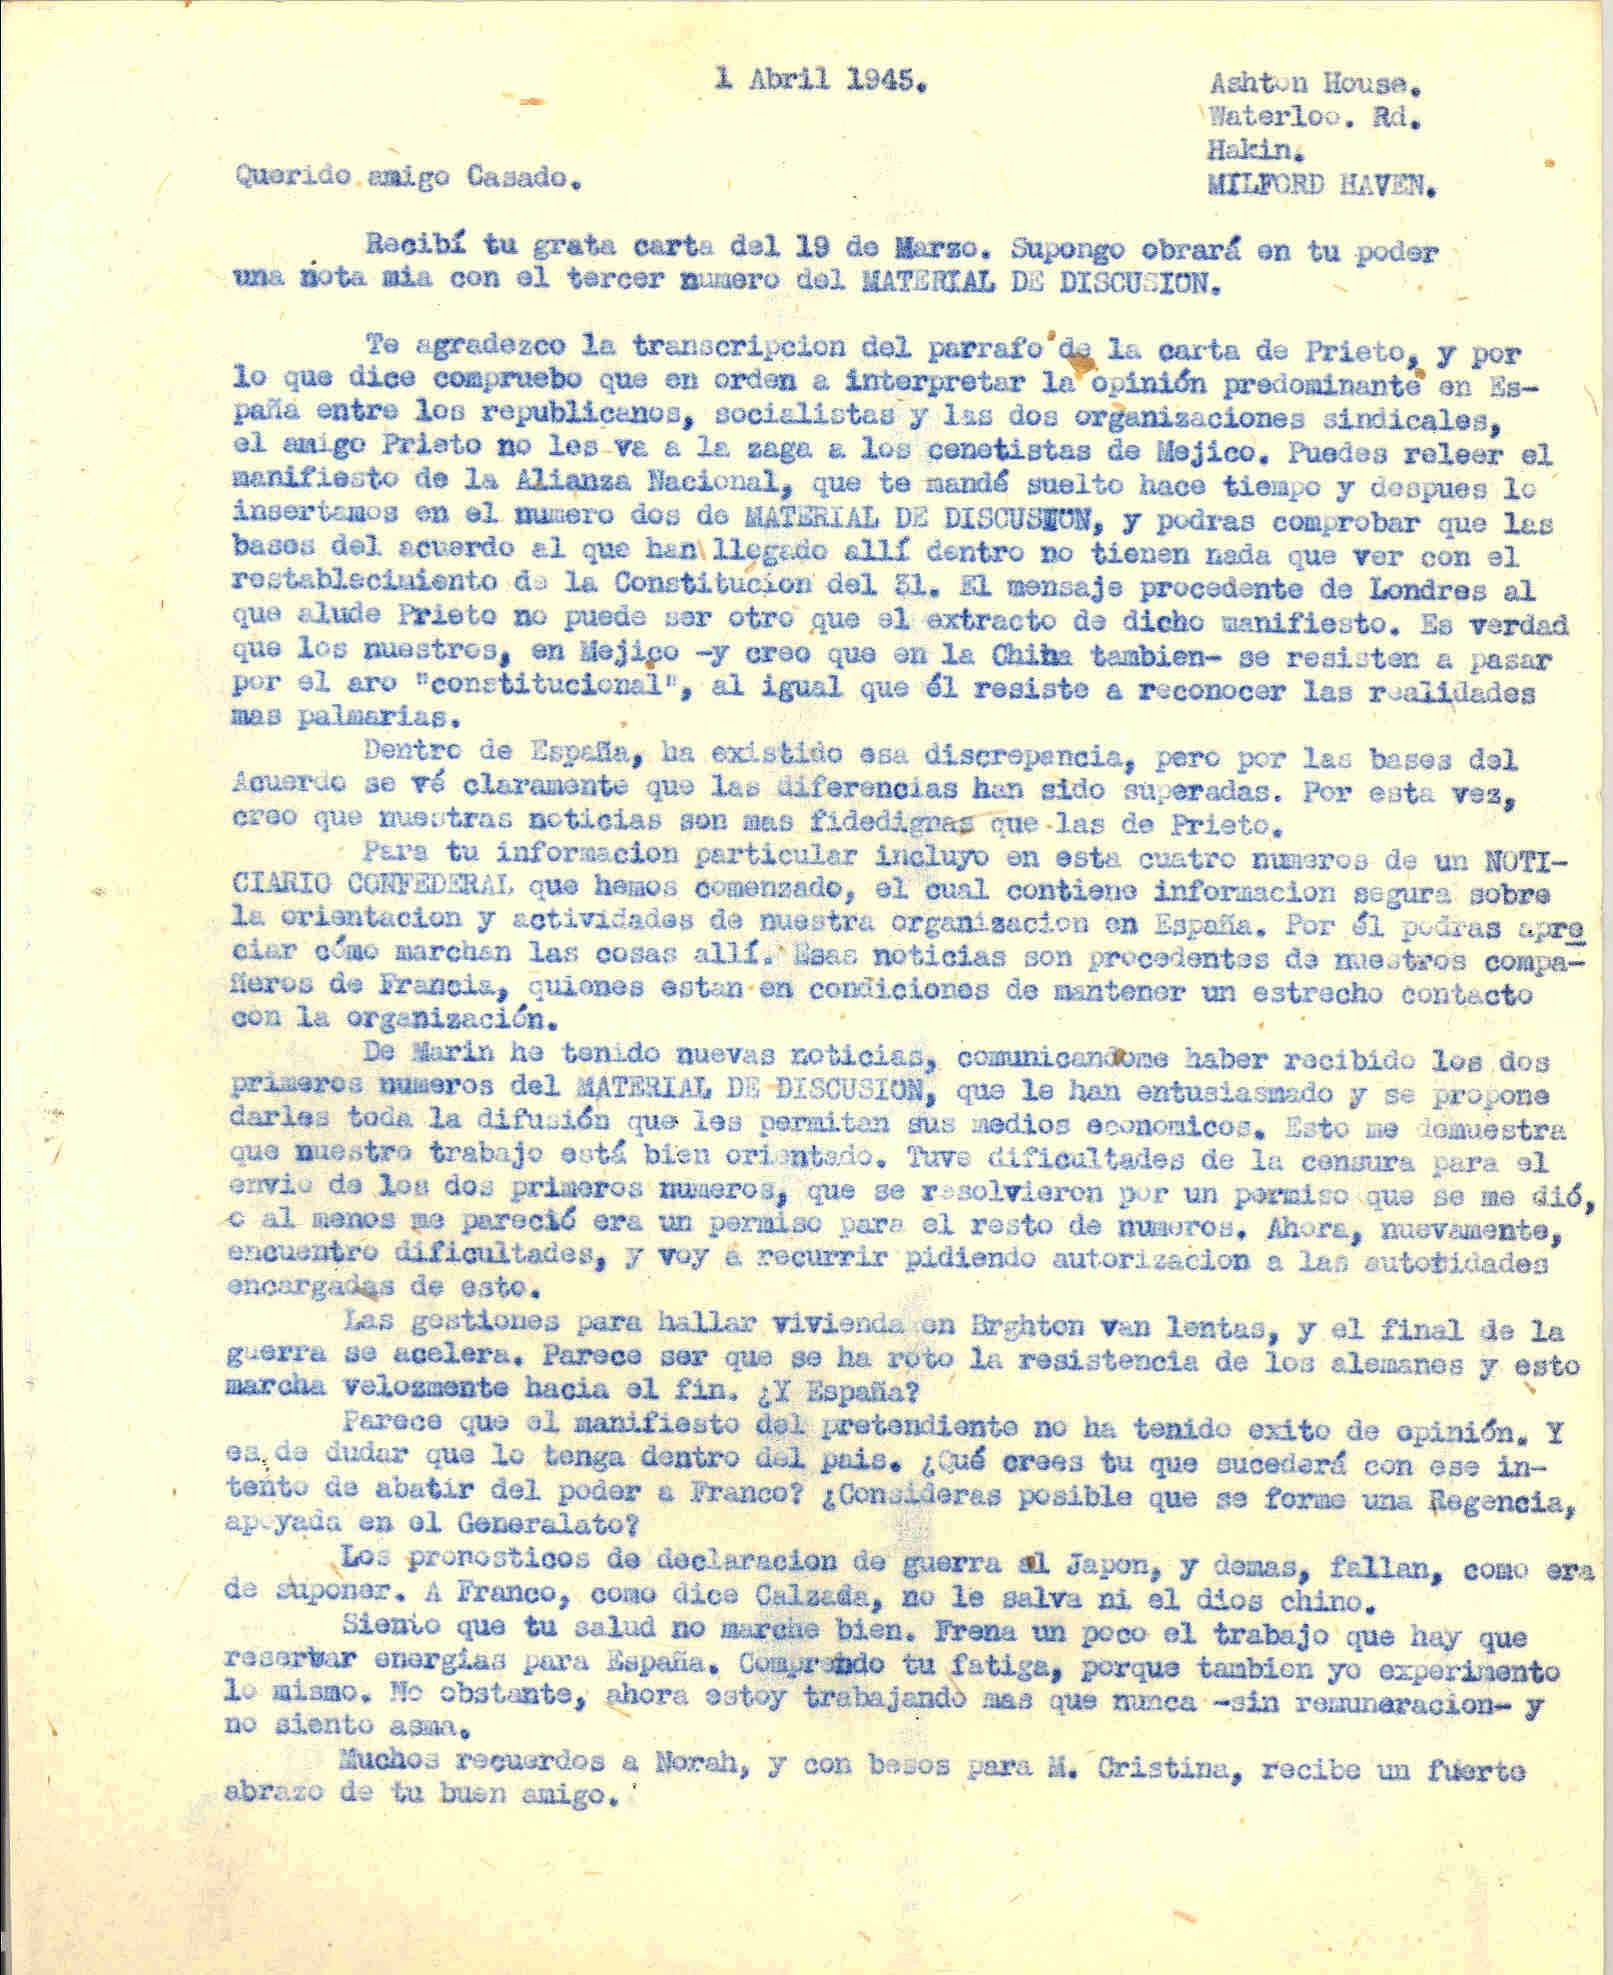 Carta a Segismundo Casado hablando sobre la publicación Material de Discusión y del aceleramiento del fin de la guerra y que los pronósticos de guerra a Japón fallan.